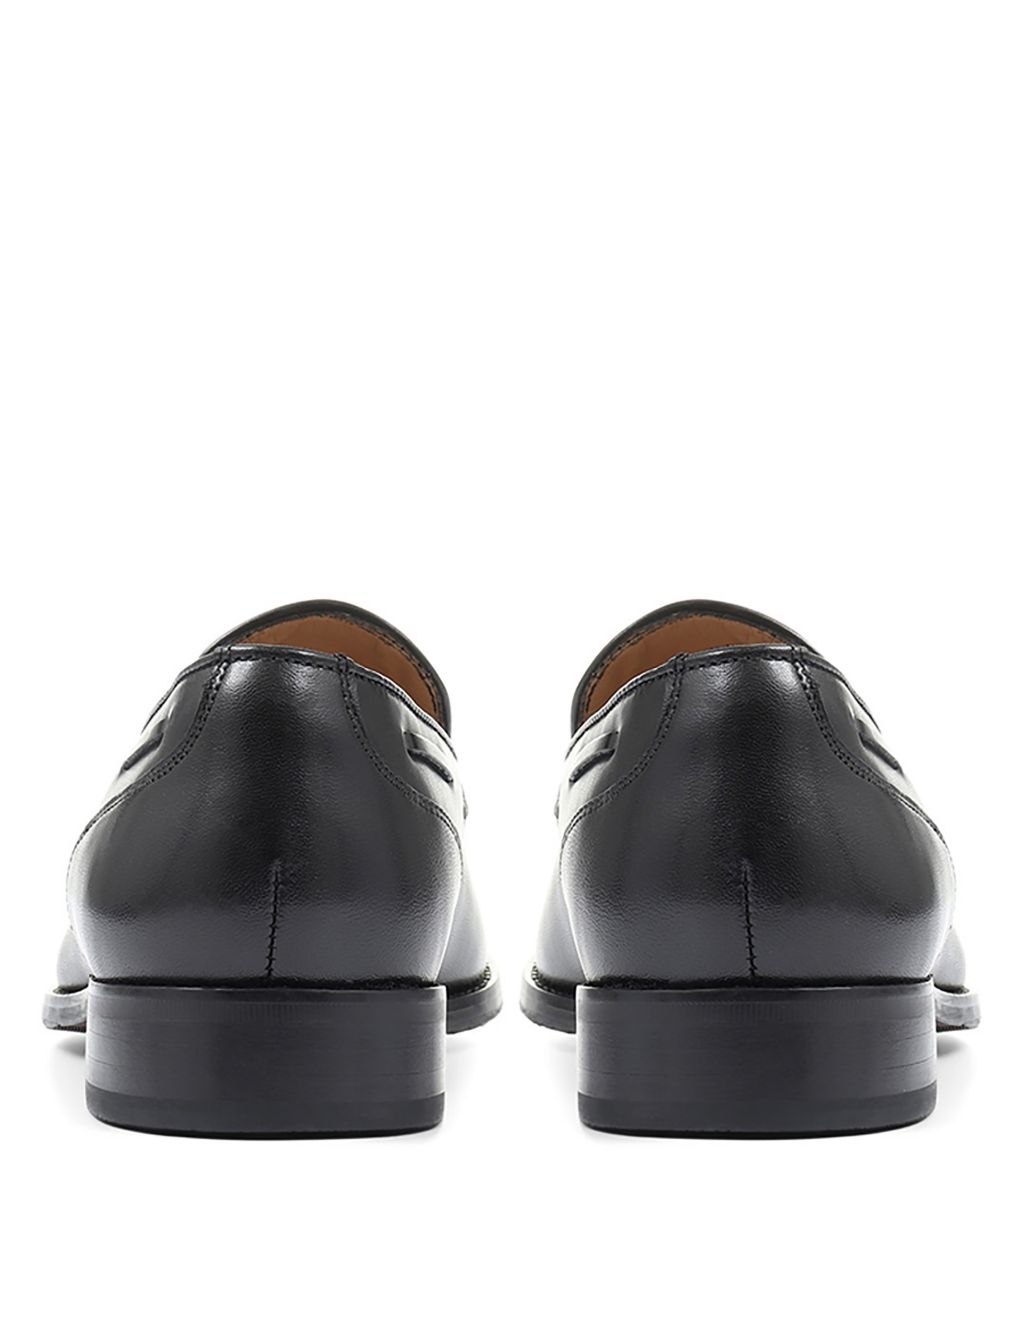 Leather Tassel Slip-On Loafers image 4